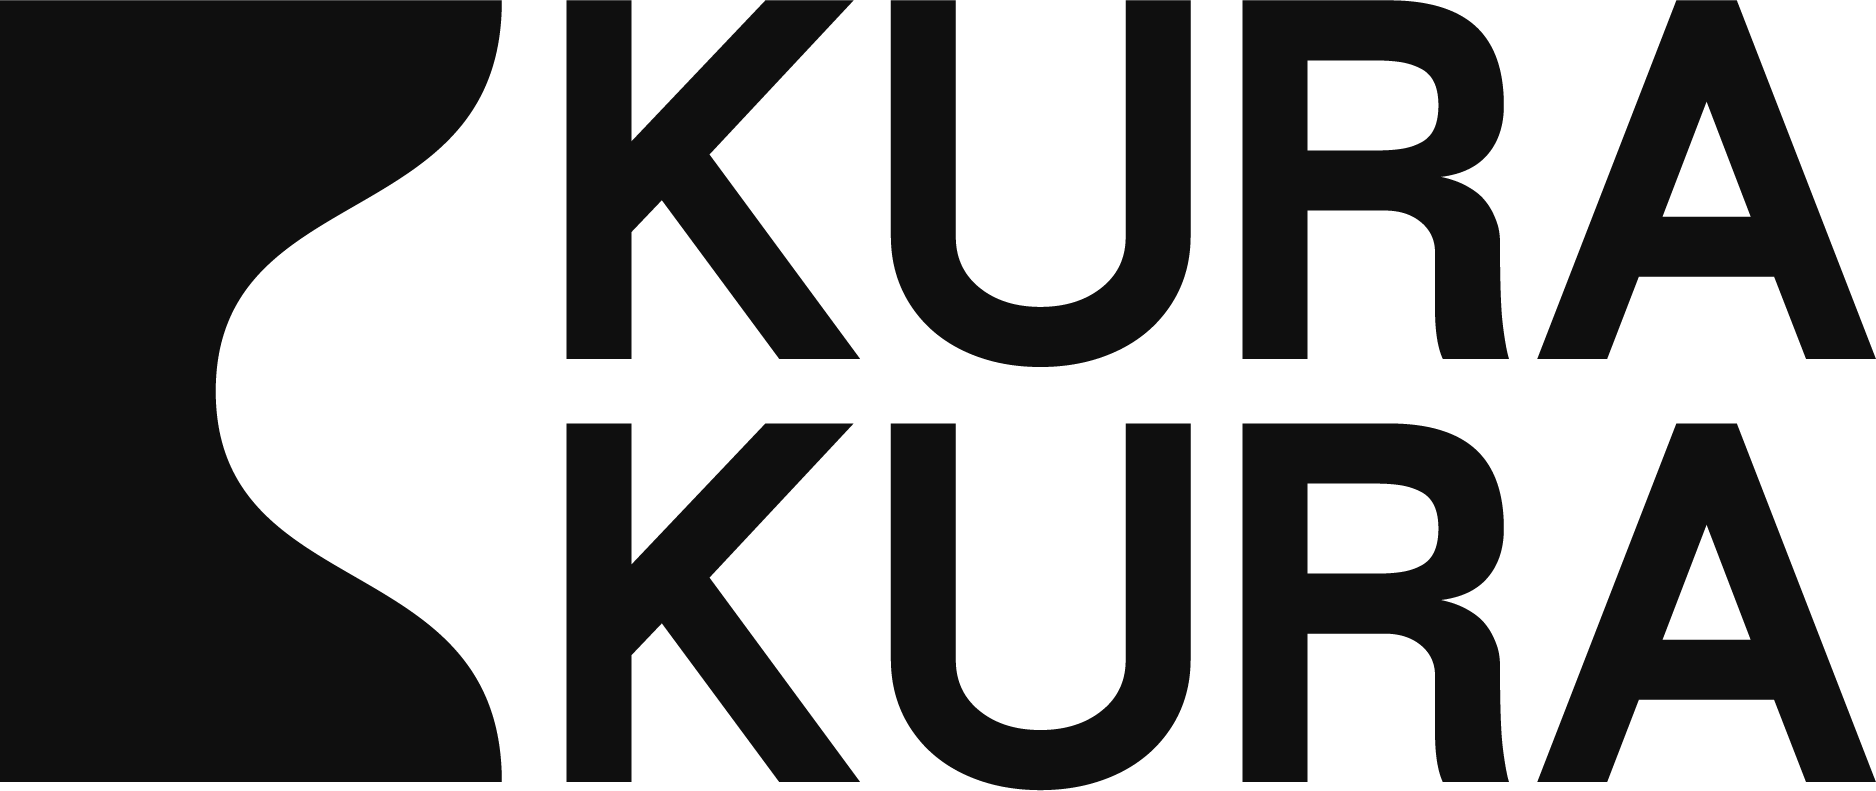 Kura Kura Logo.png